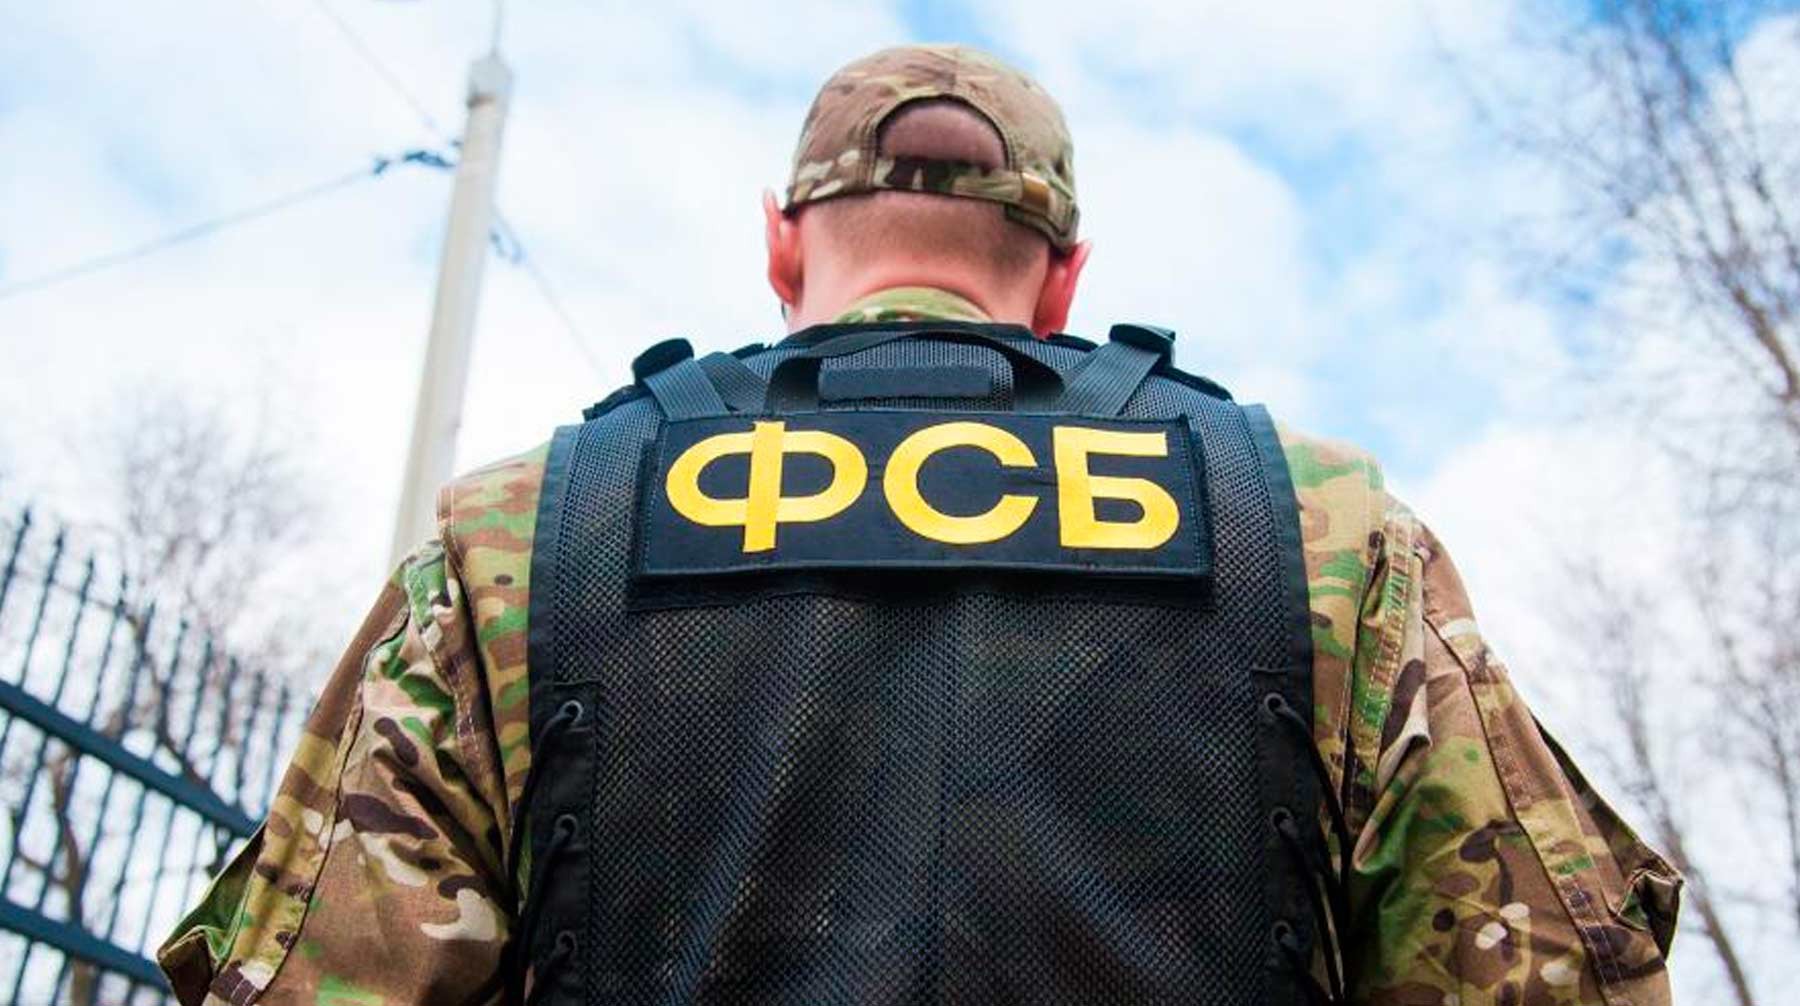 Dailystorm - ФСБ разоблачила украинского шпиона в Ракетных войсках России